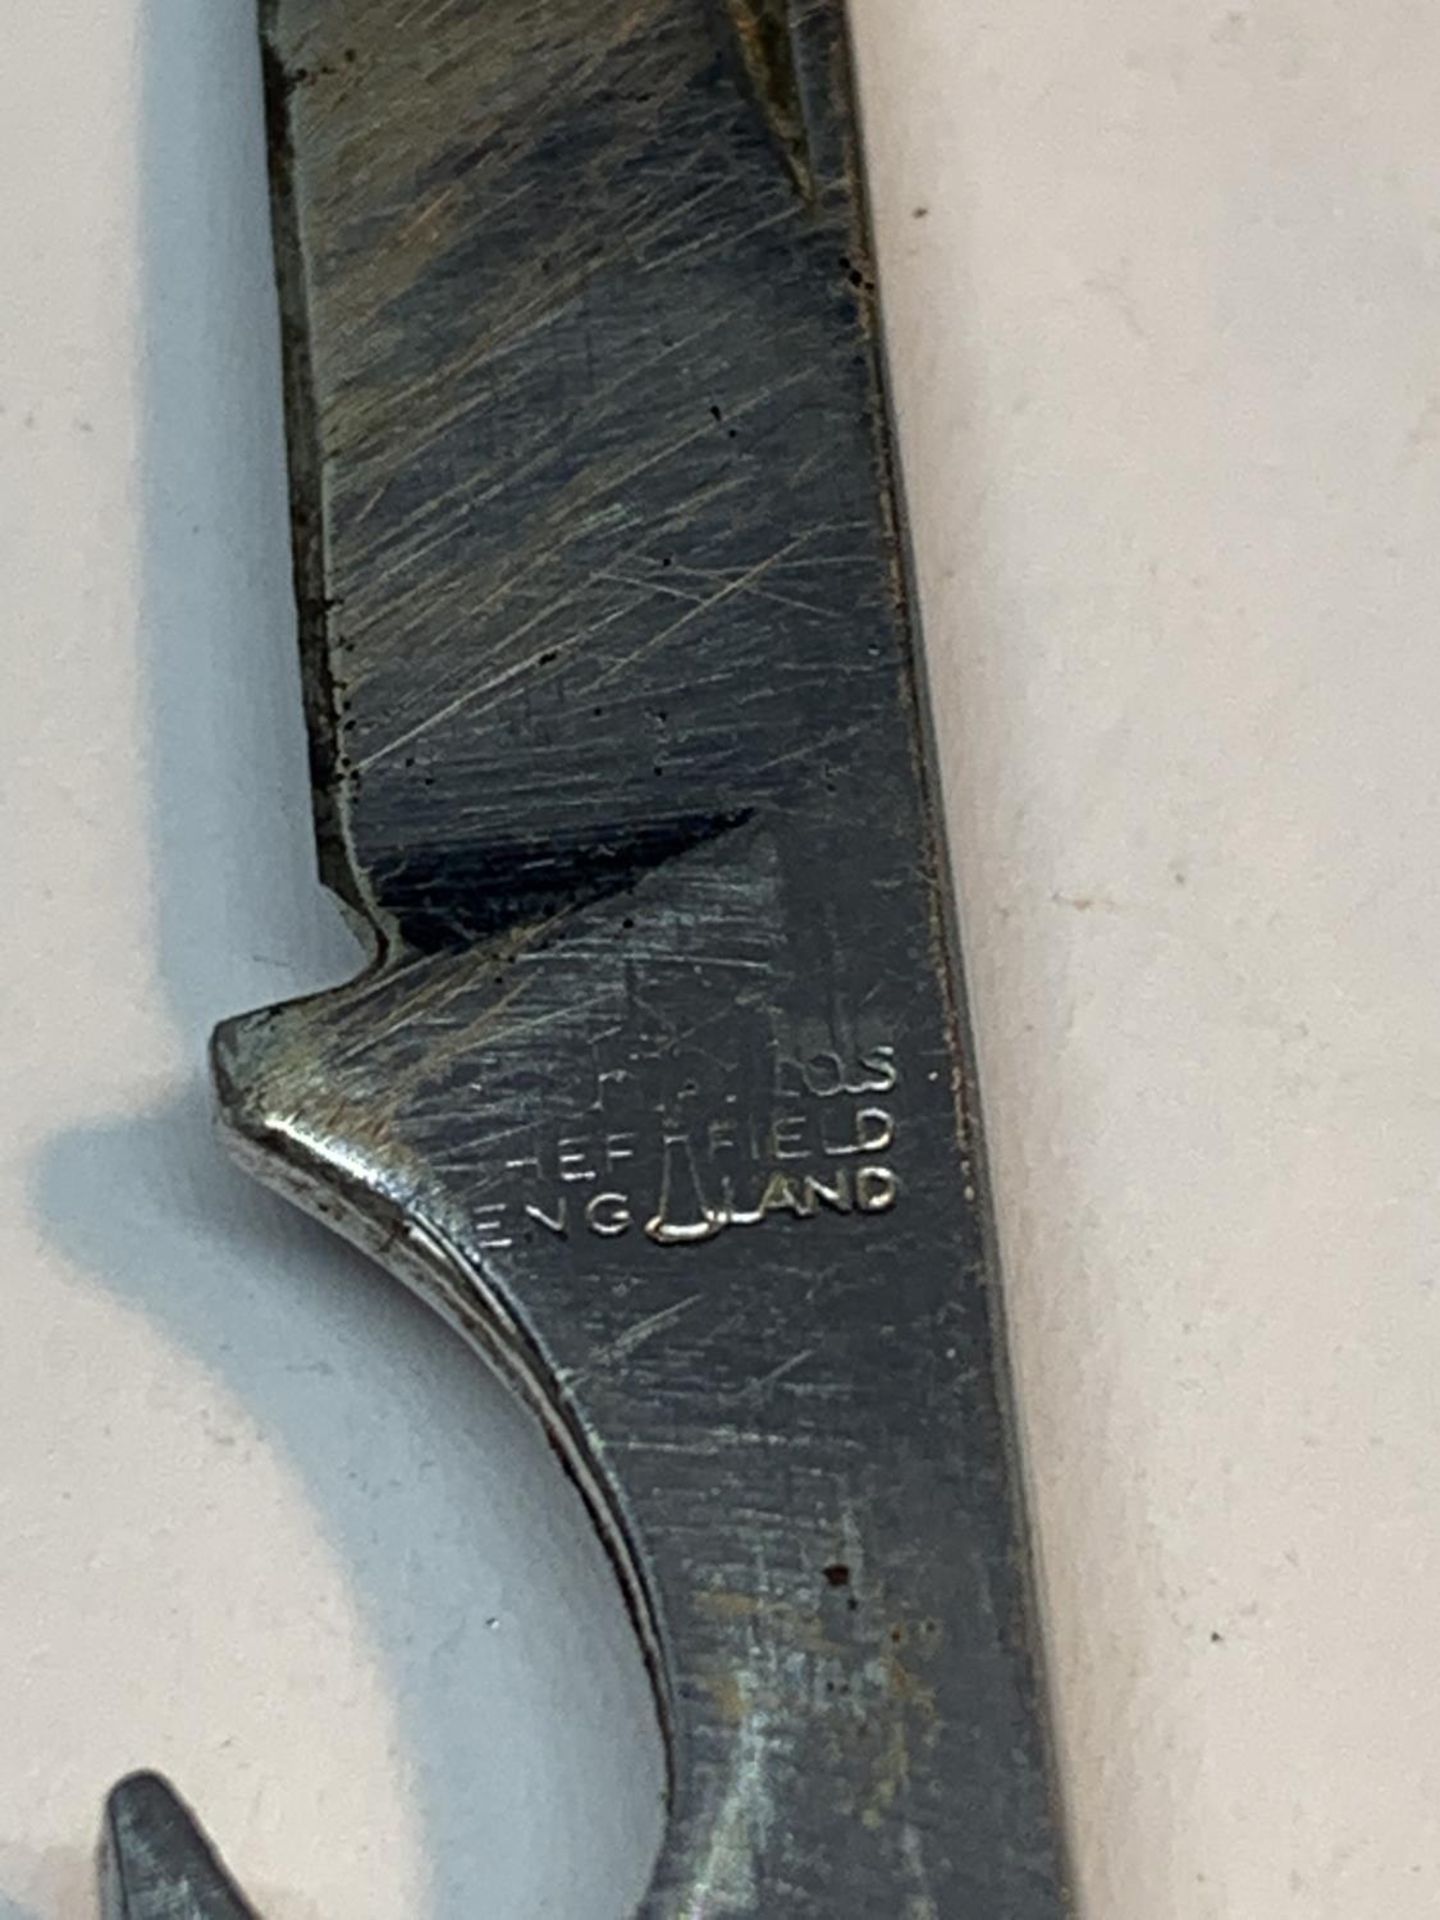 A VINTAGE POCKET KNIFE - Image 3 of 4